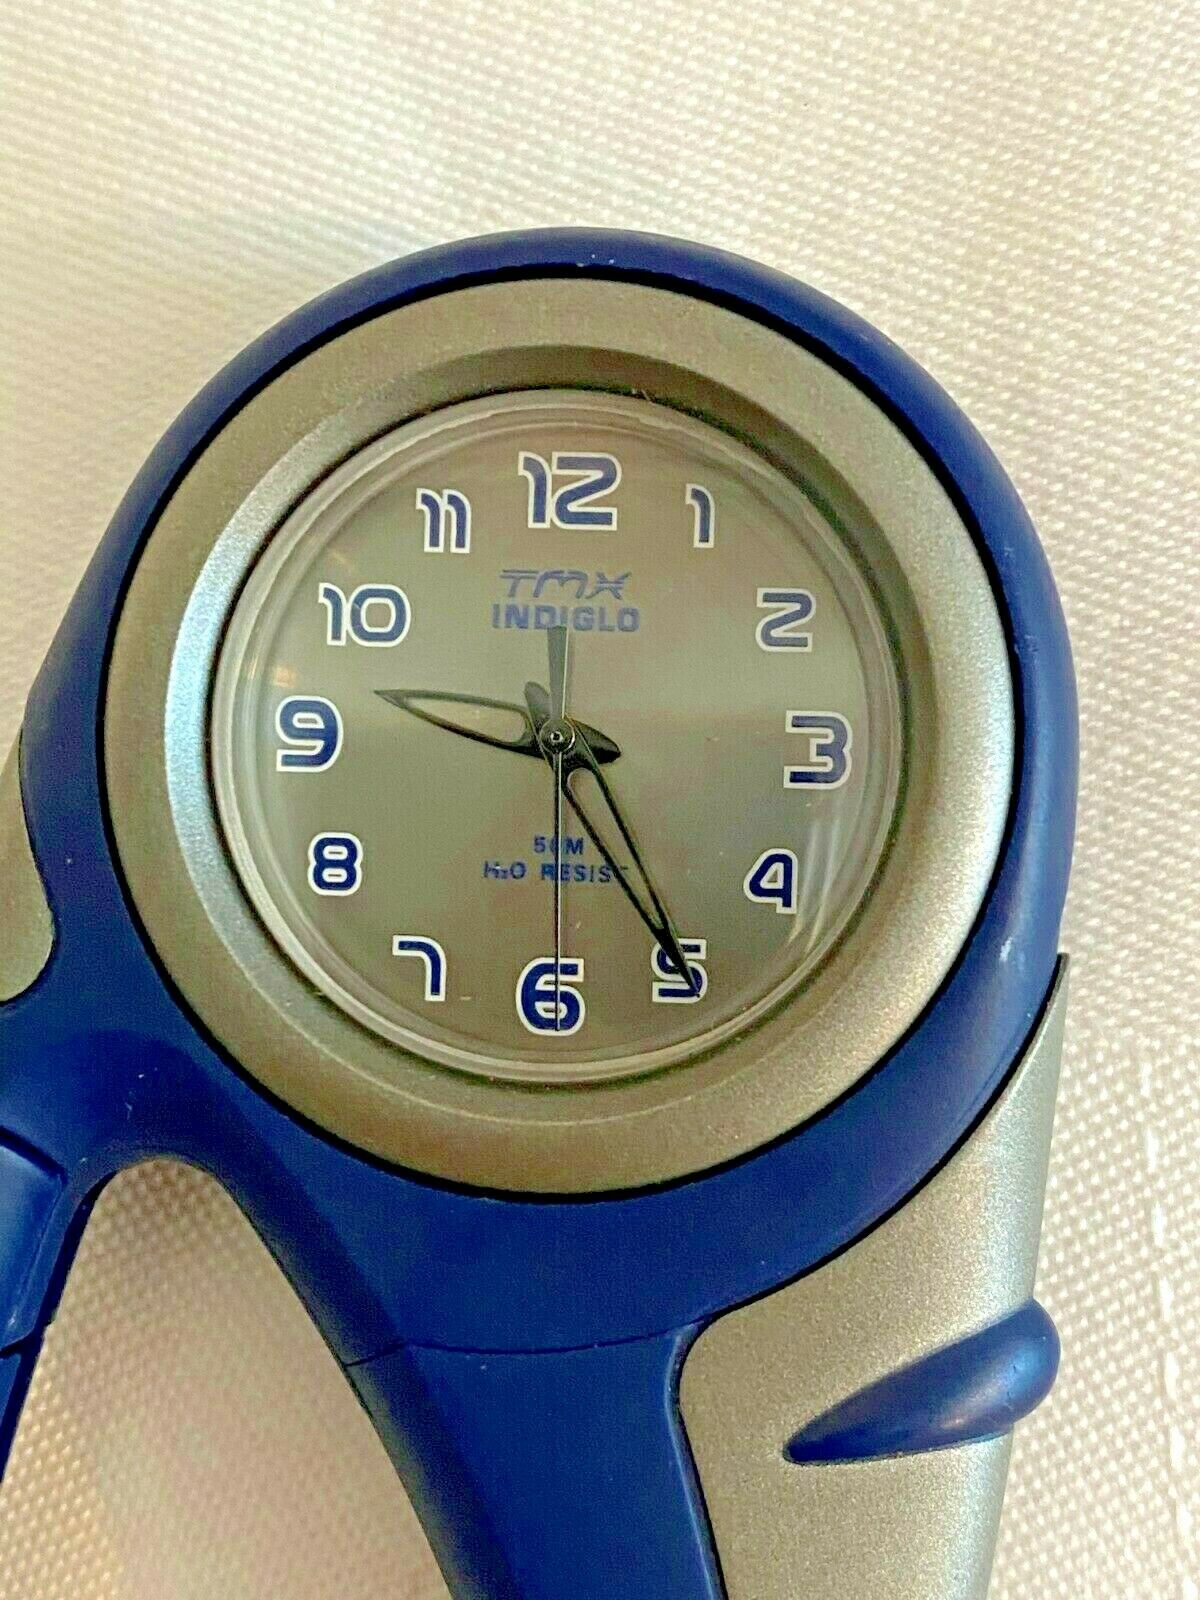 timex carabiner watch